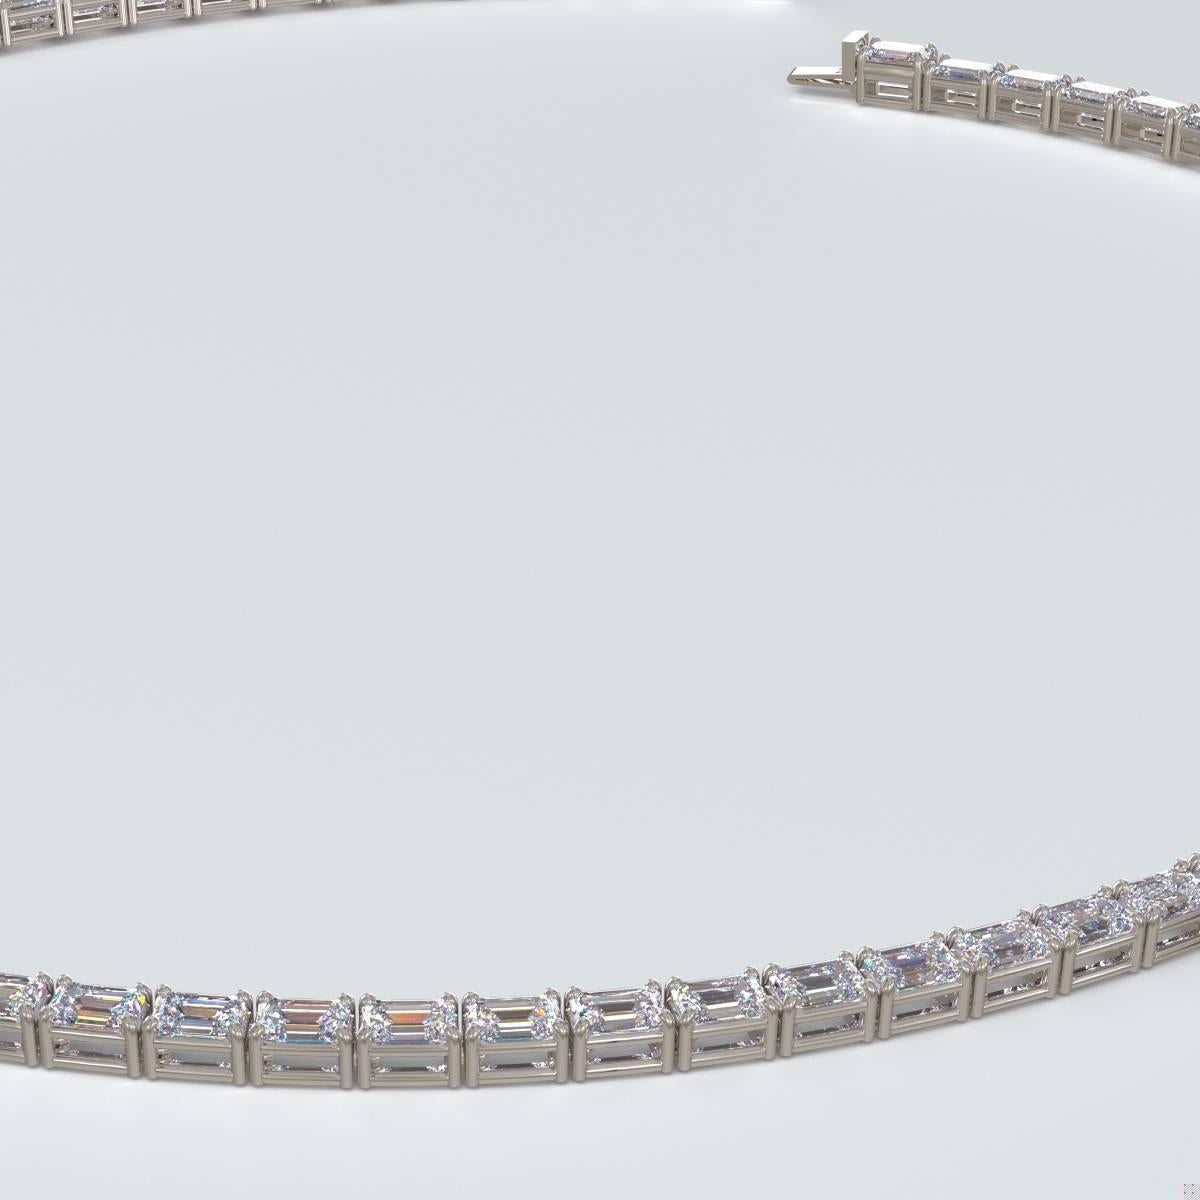 Emilio Jewelry Gia Certified 30.00 Carat Emerald Cut Diamond Necklace